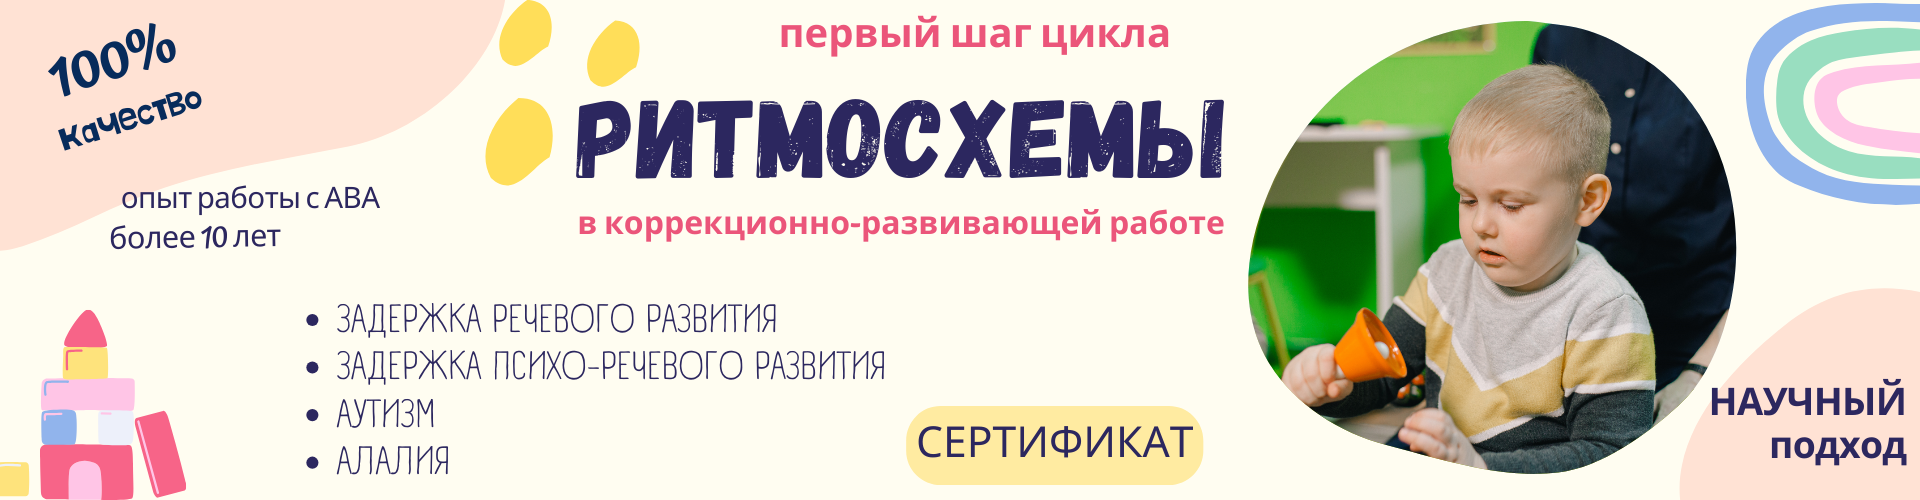 баннер программы Ритмосхемы Филистович